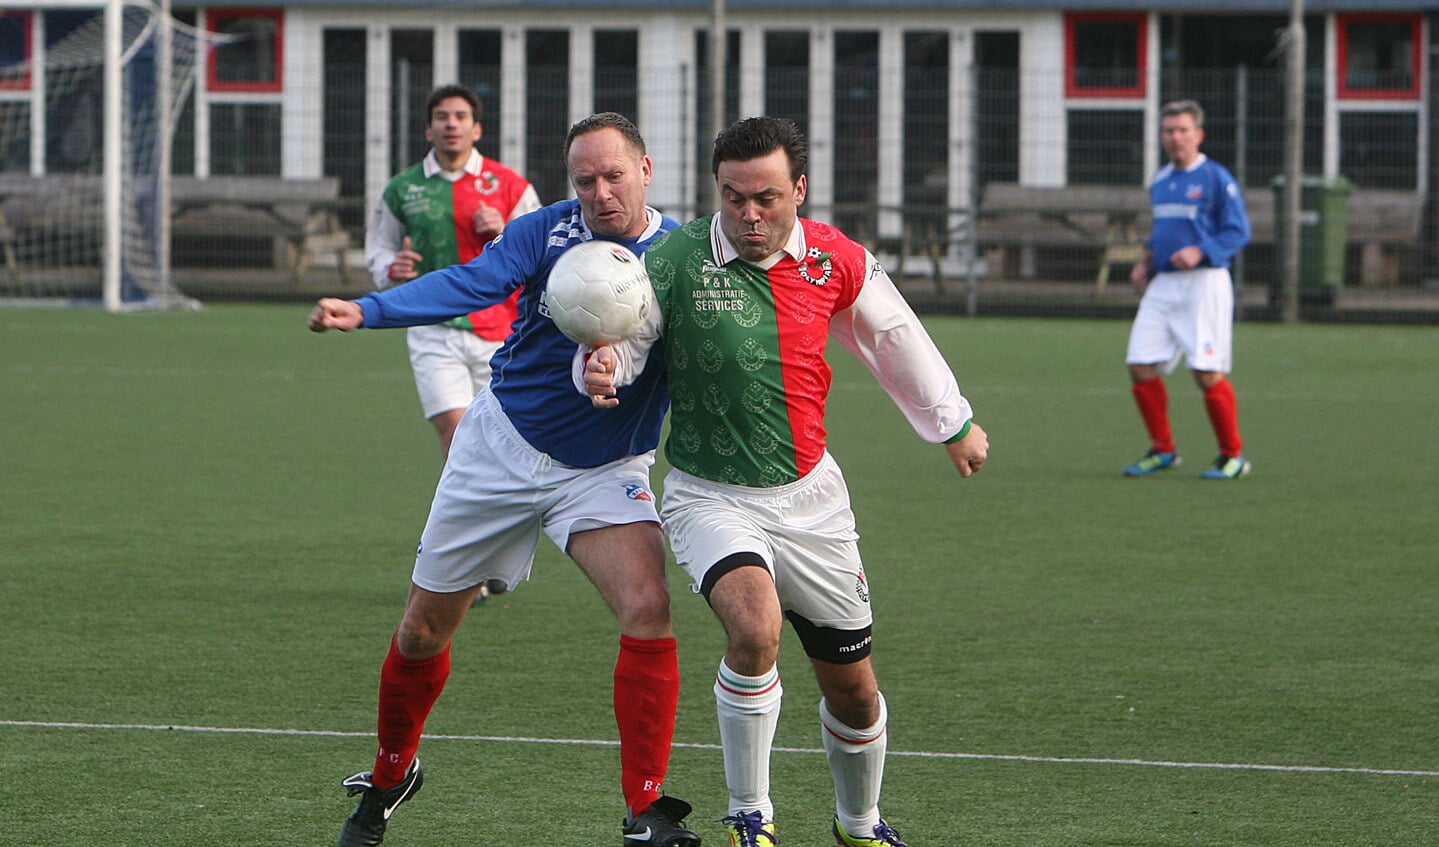 Op de velden van BFC speelden oud-spelers van het eerste elftal tegen SV Olympia '25.